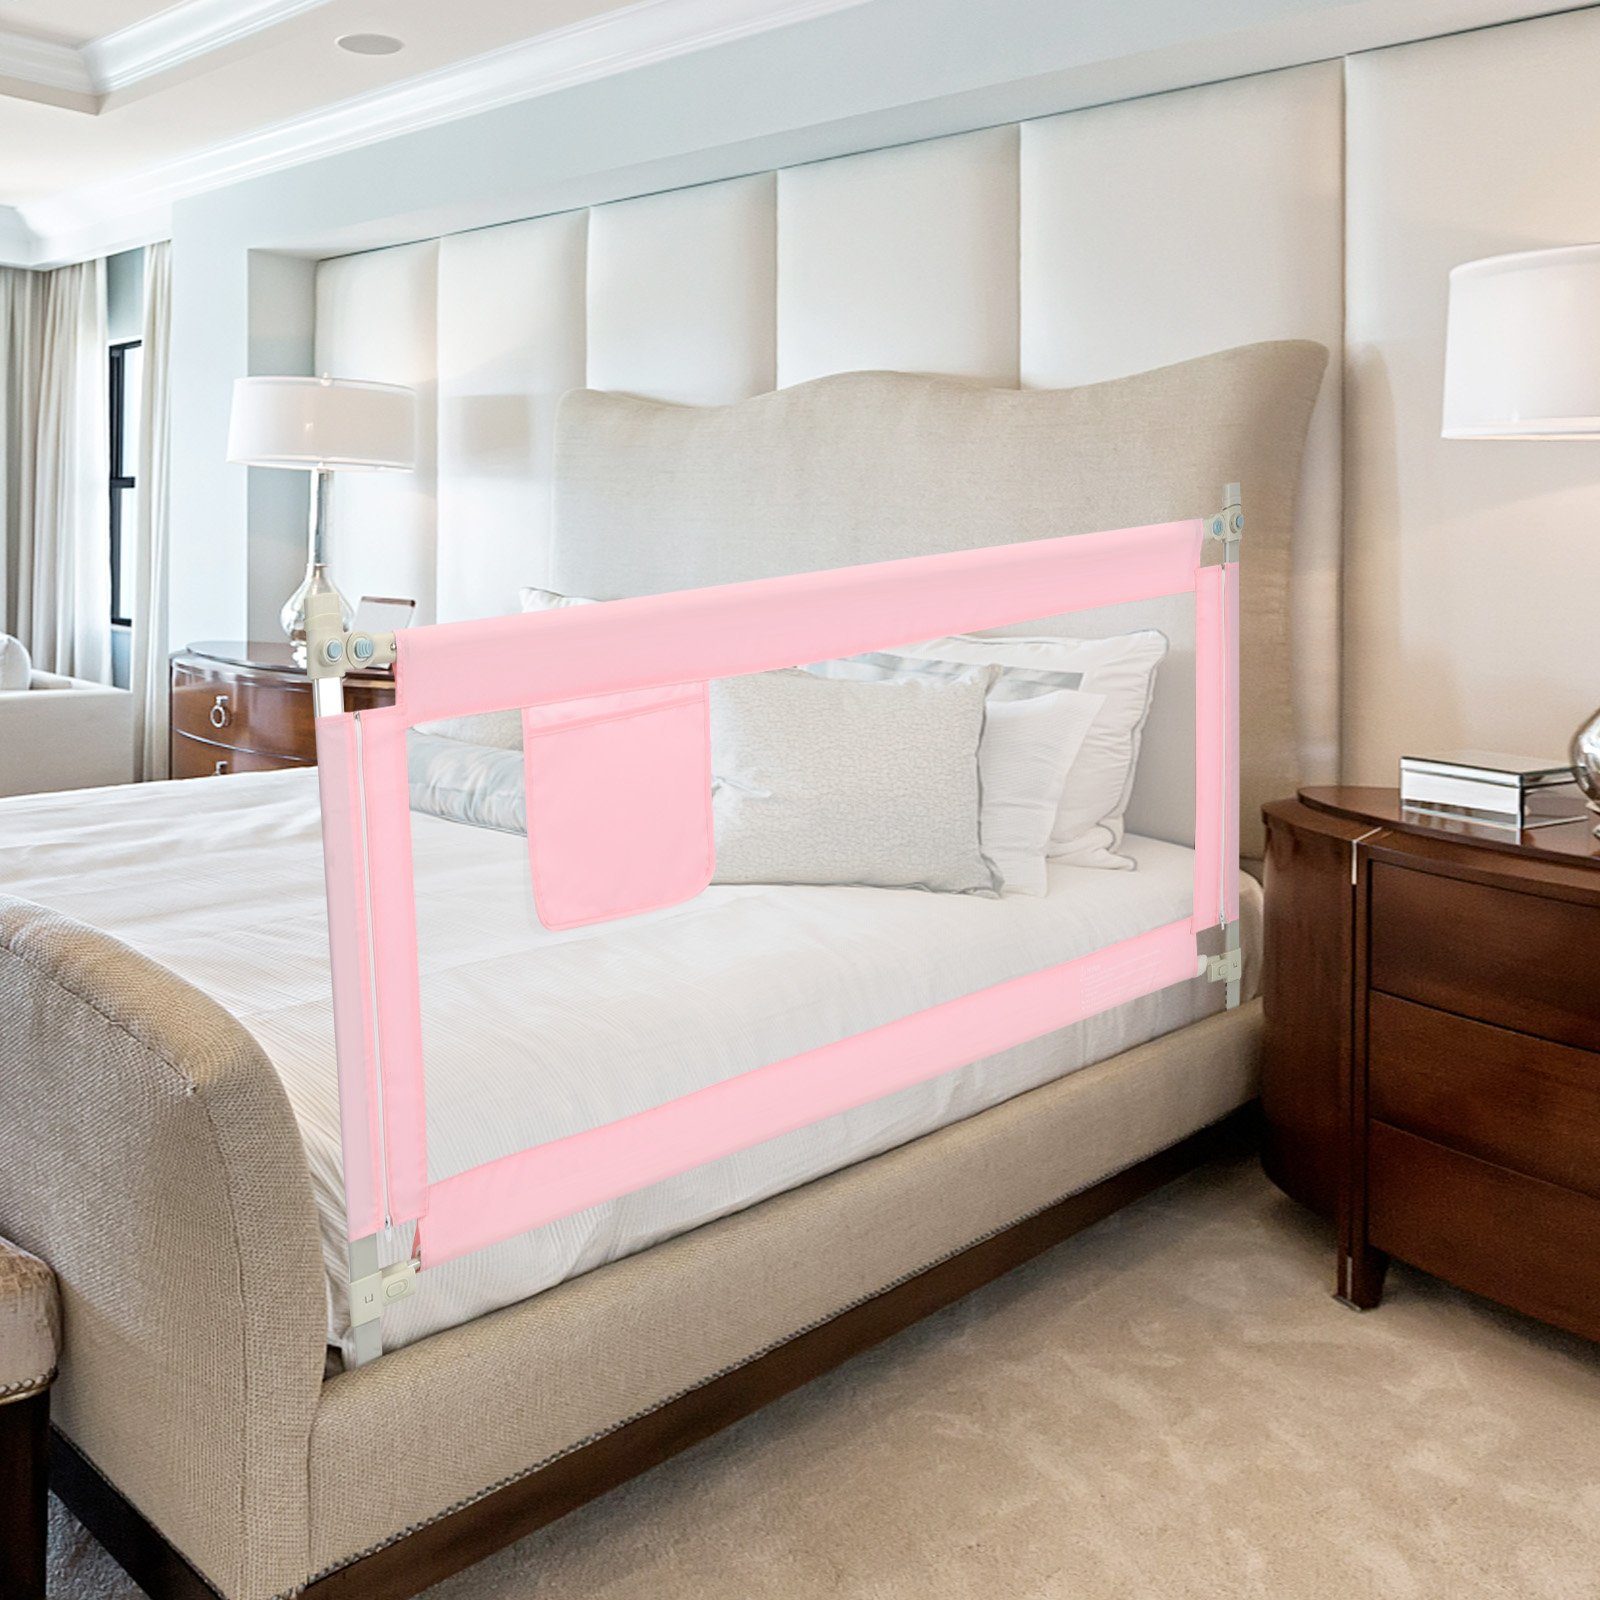 24 Bettschutzgitter Bettgitter, COSTWAY Höhen mit rosa einstellbare